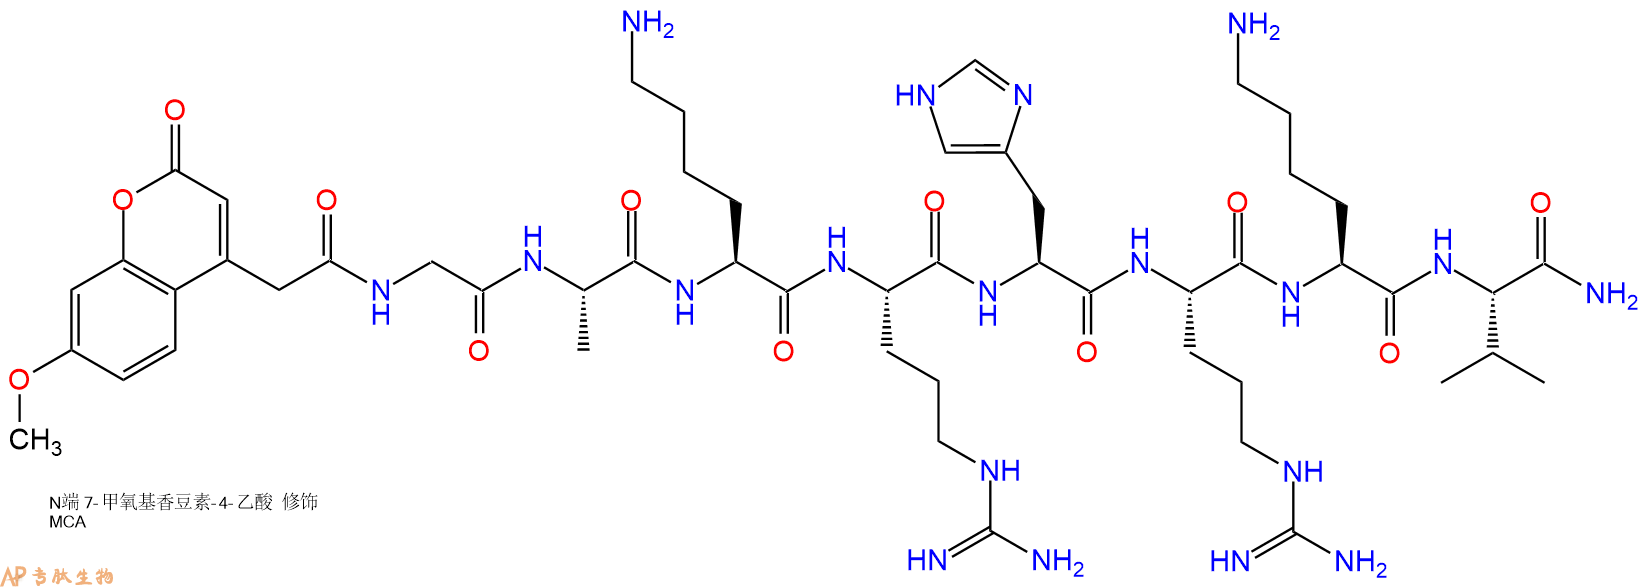 专肽生物产品Mca-Gly-Ala-Lys-Arg-His-Arg-Lys-Val-NH2